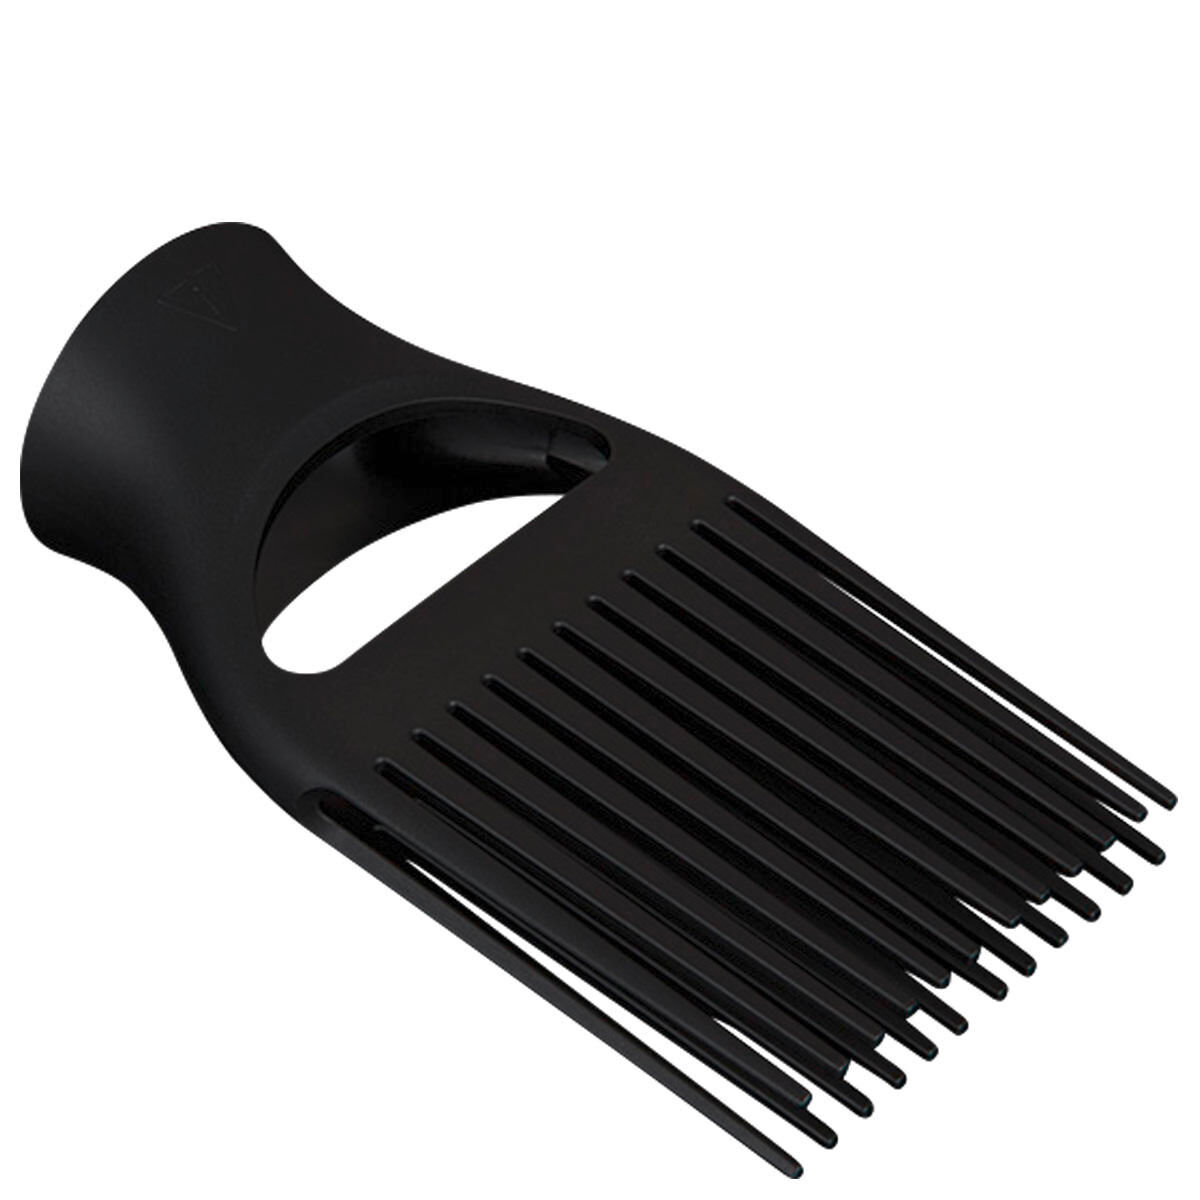 ghd professional comb nozzle